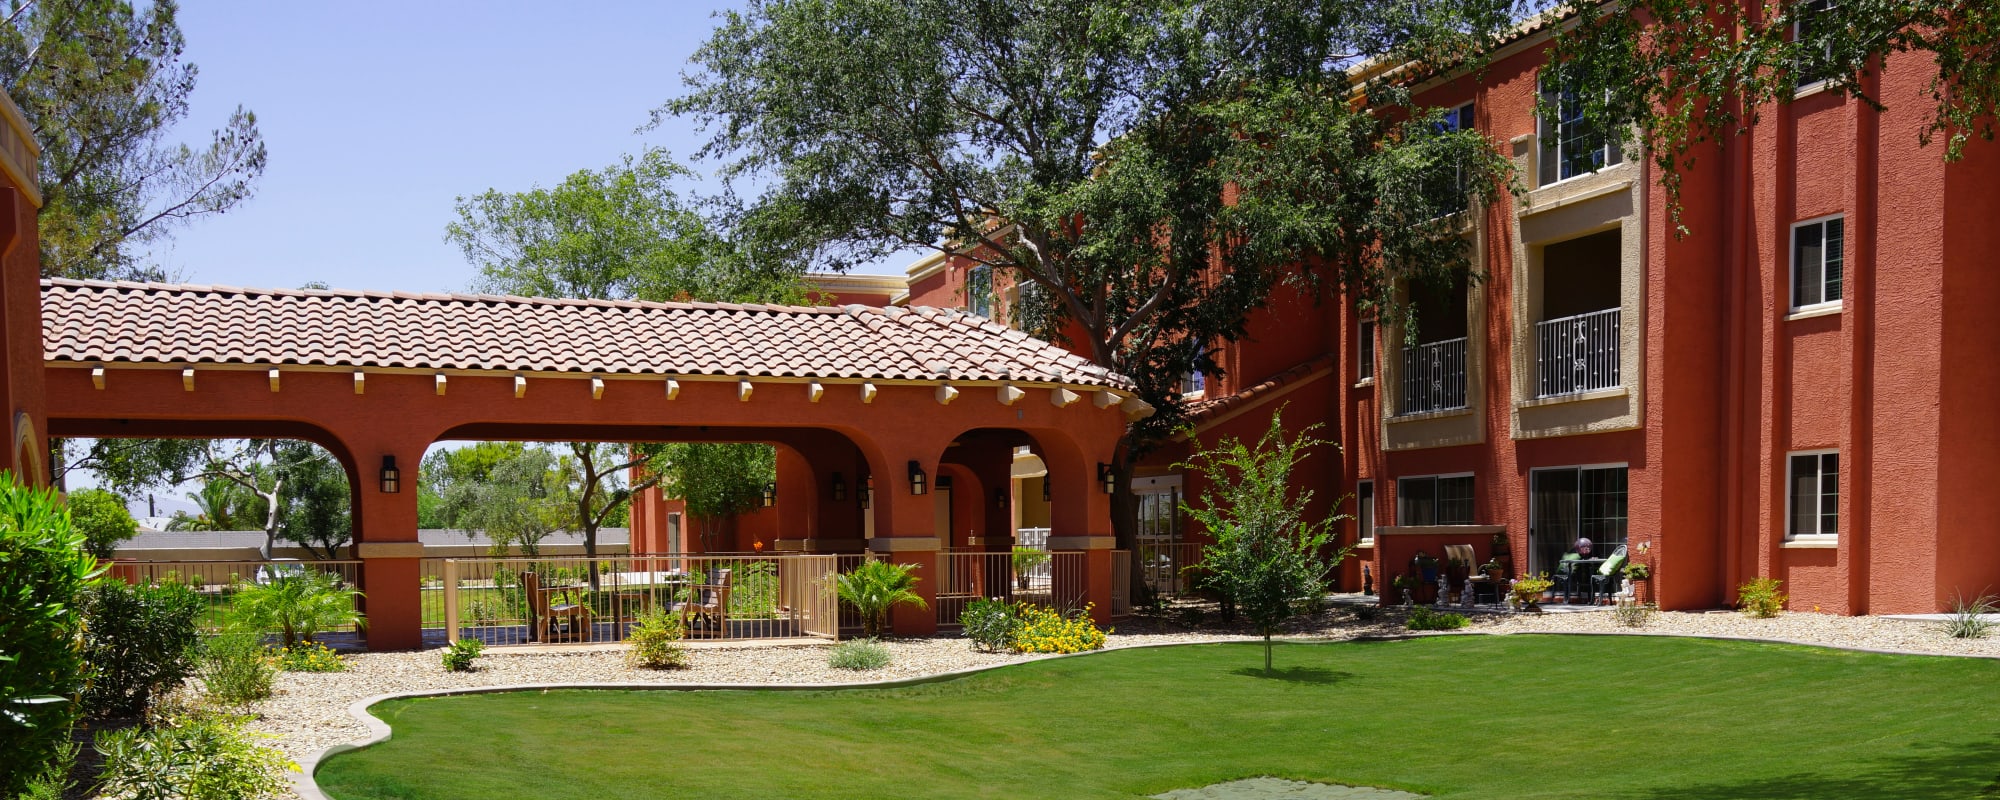 Exterior view of Casa Del Rio Senior Living in Peoria, Arizona